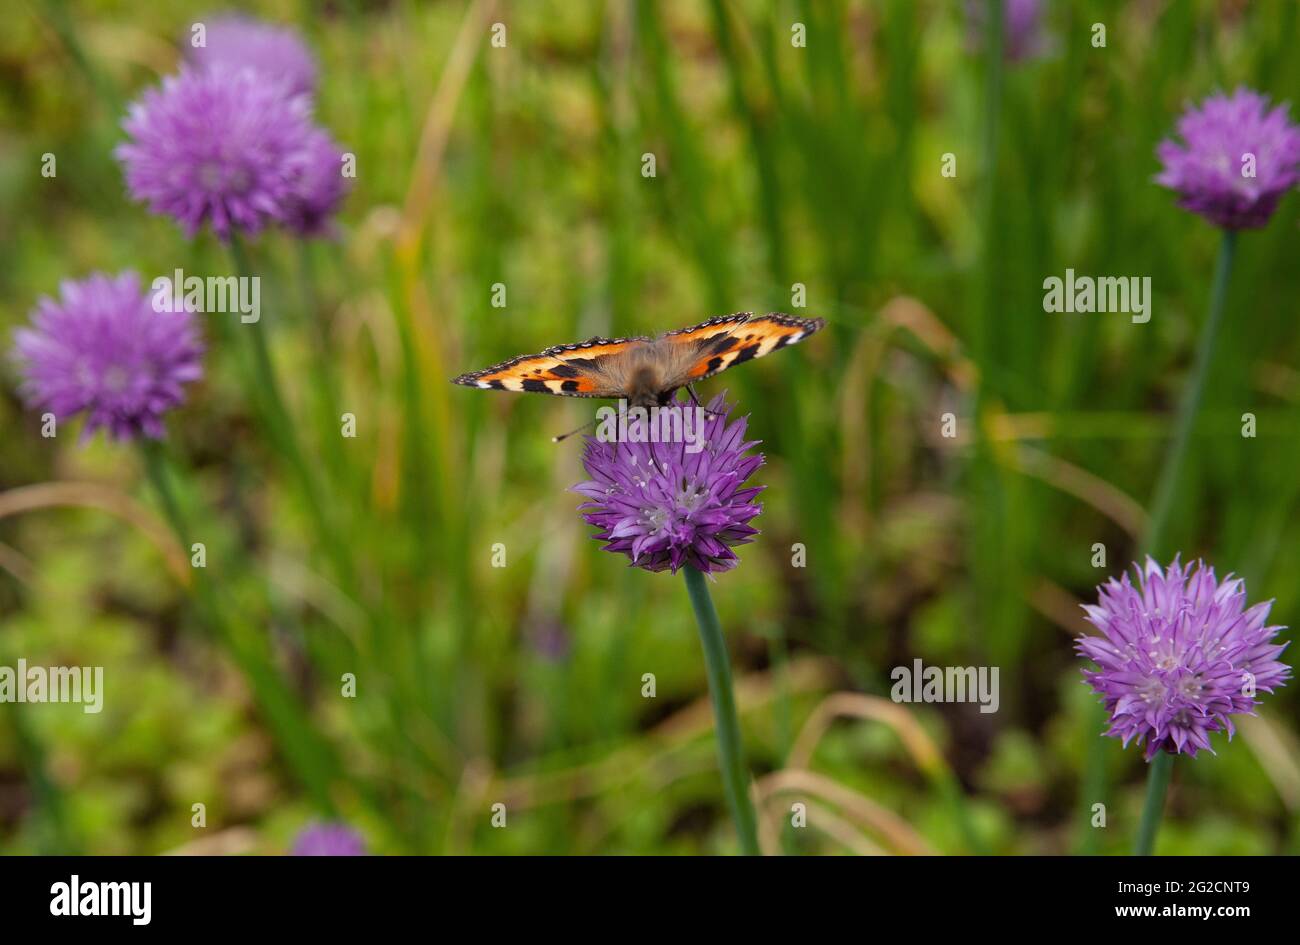 Un primer plano de una mariposa pintada dama mientras bebe néctar de una flor de cebolleta Foto de stock